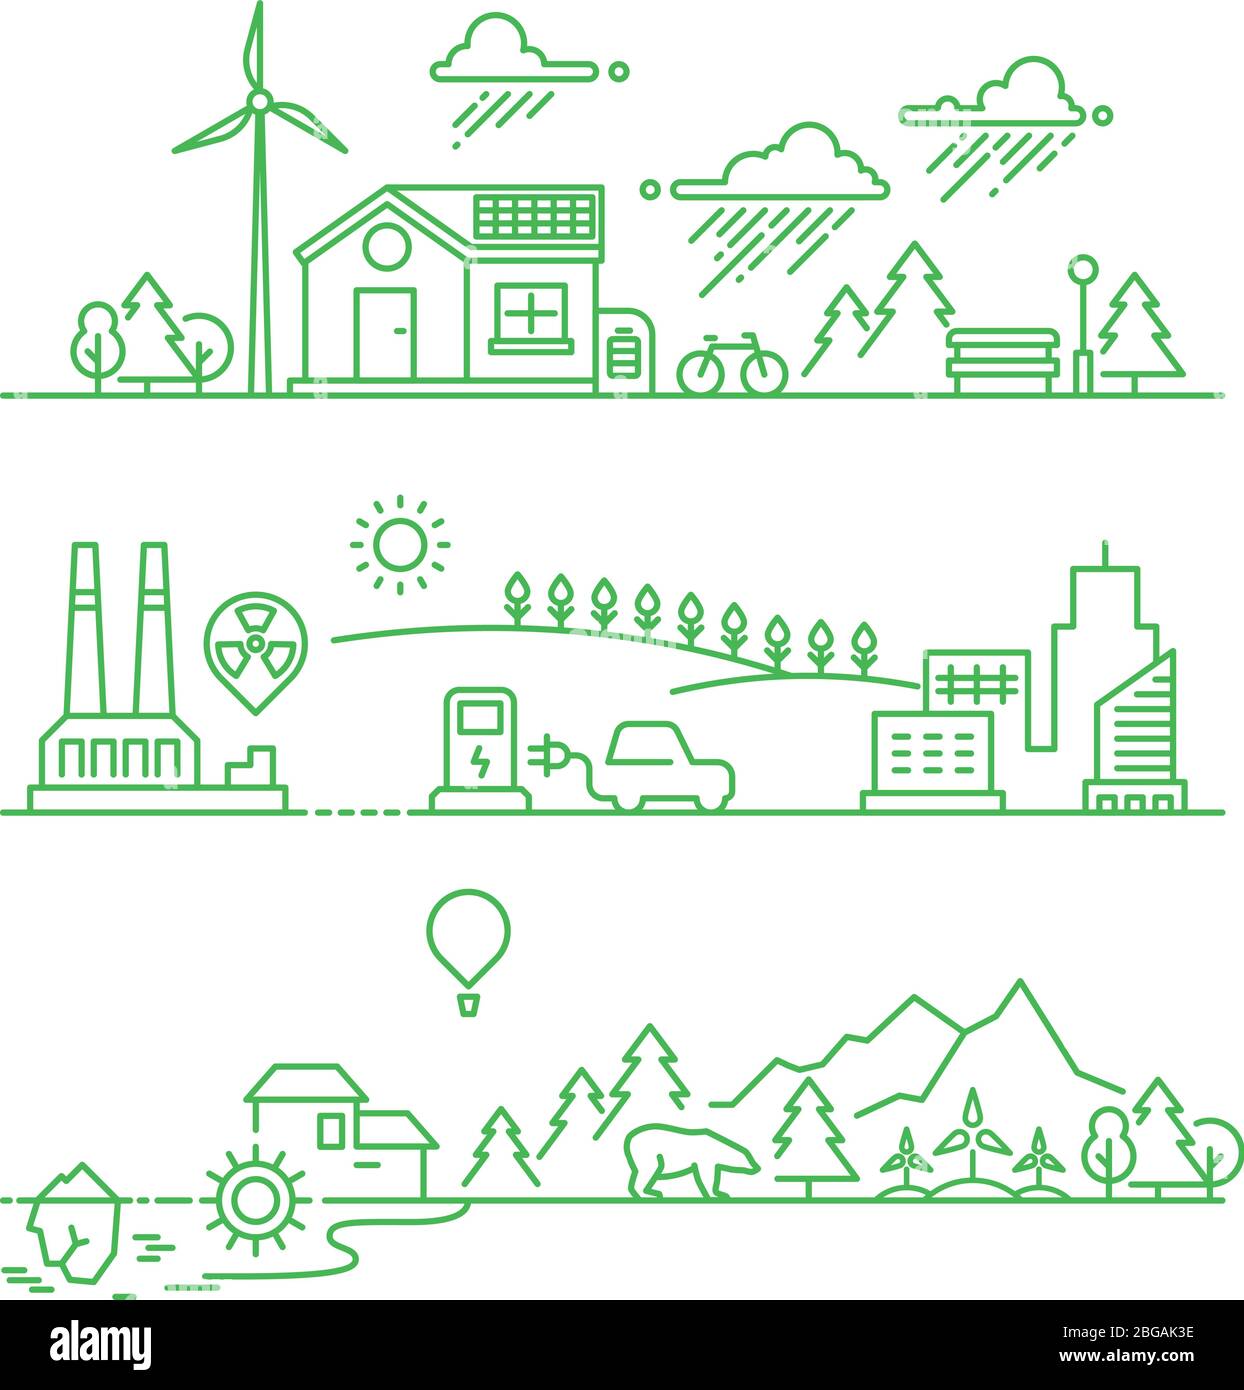 Skizzieren Sie die Öko-Stadt. Zukunft ökologische grüne Umwelt und Ökosystemvektorkonzept. Umwelt Ökosystem Baum und Sonne, Energie Solar Illustration Stock Vektor